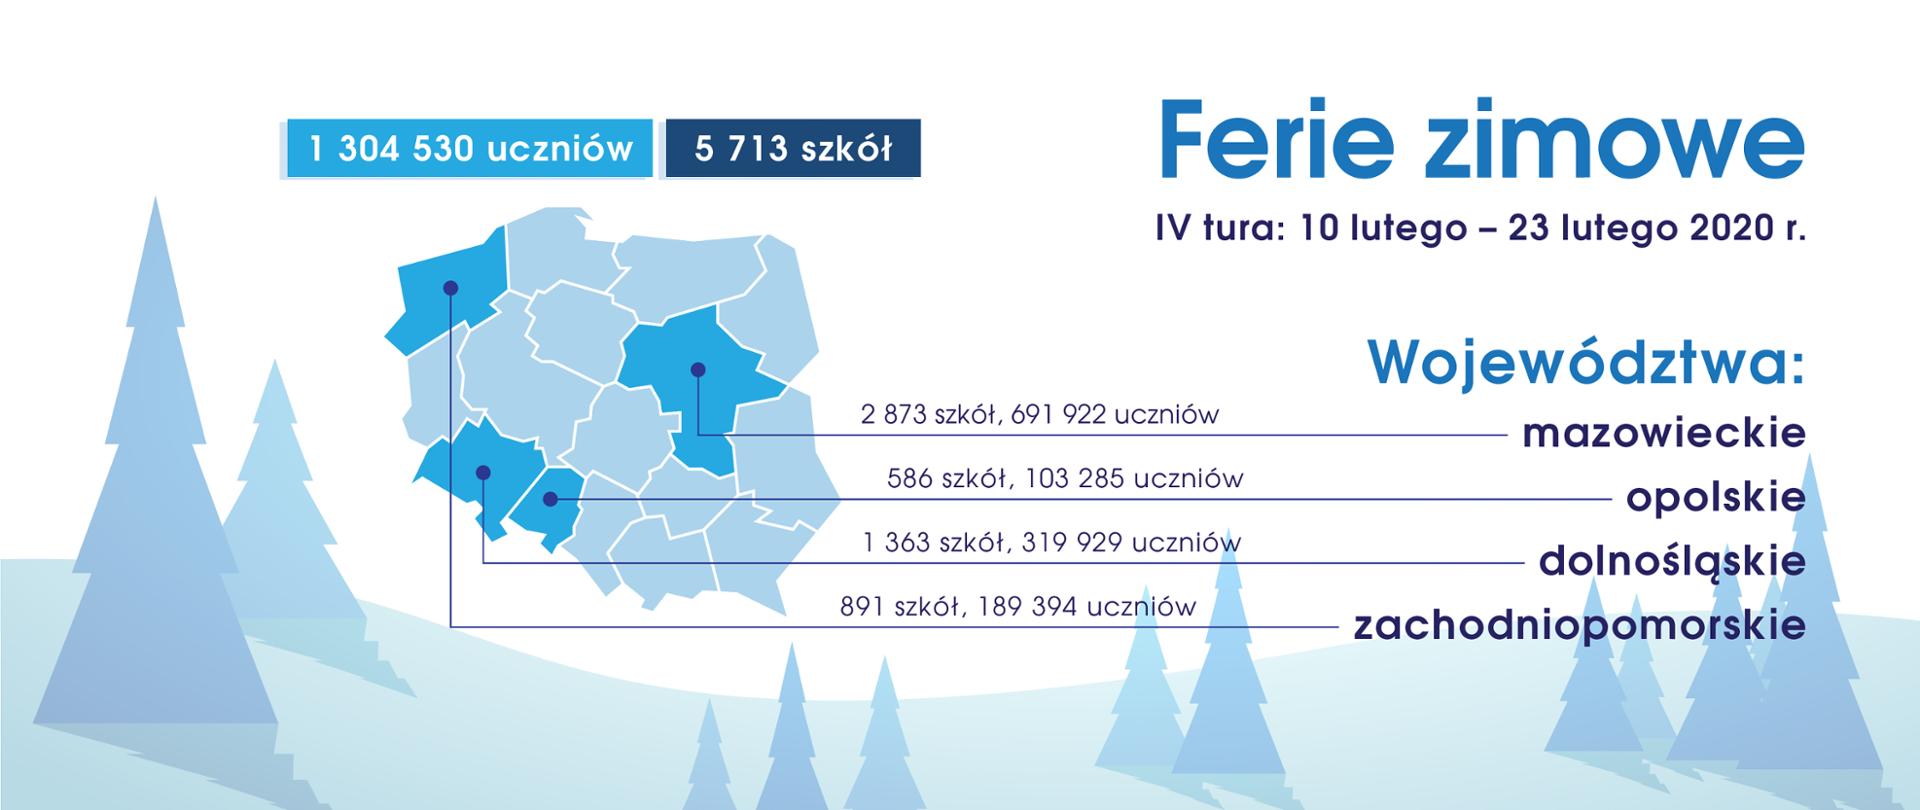 Ferie zimowe – IV tura: 10 lutego – 23 lutego 2020 r. Grafika przedstawiająca mapę Polski, zimowy krajobraz oraz informację o IV turze ferii zimowych dla województw: mazowieckiego, opolskiego, dolnośląskiego i zachodniopomorskiego.